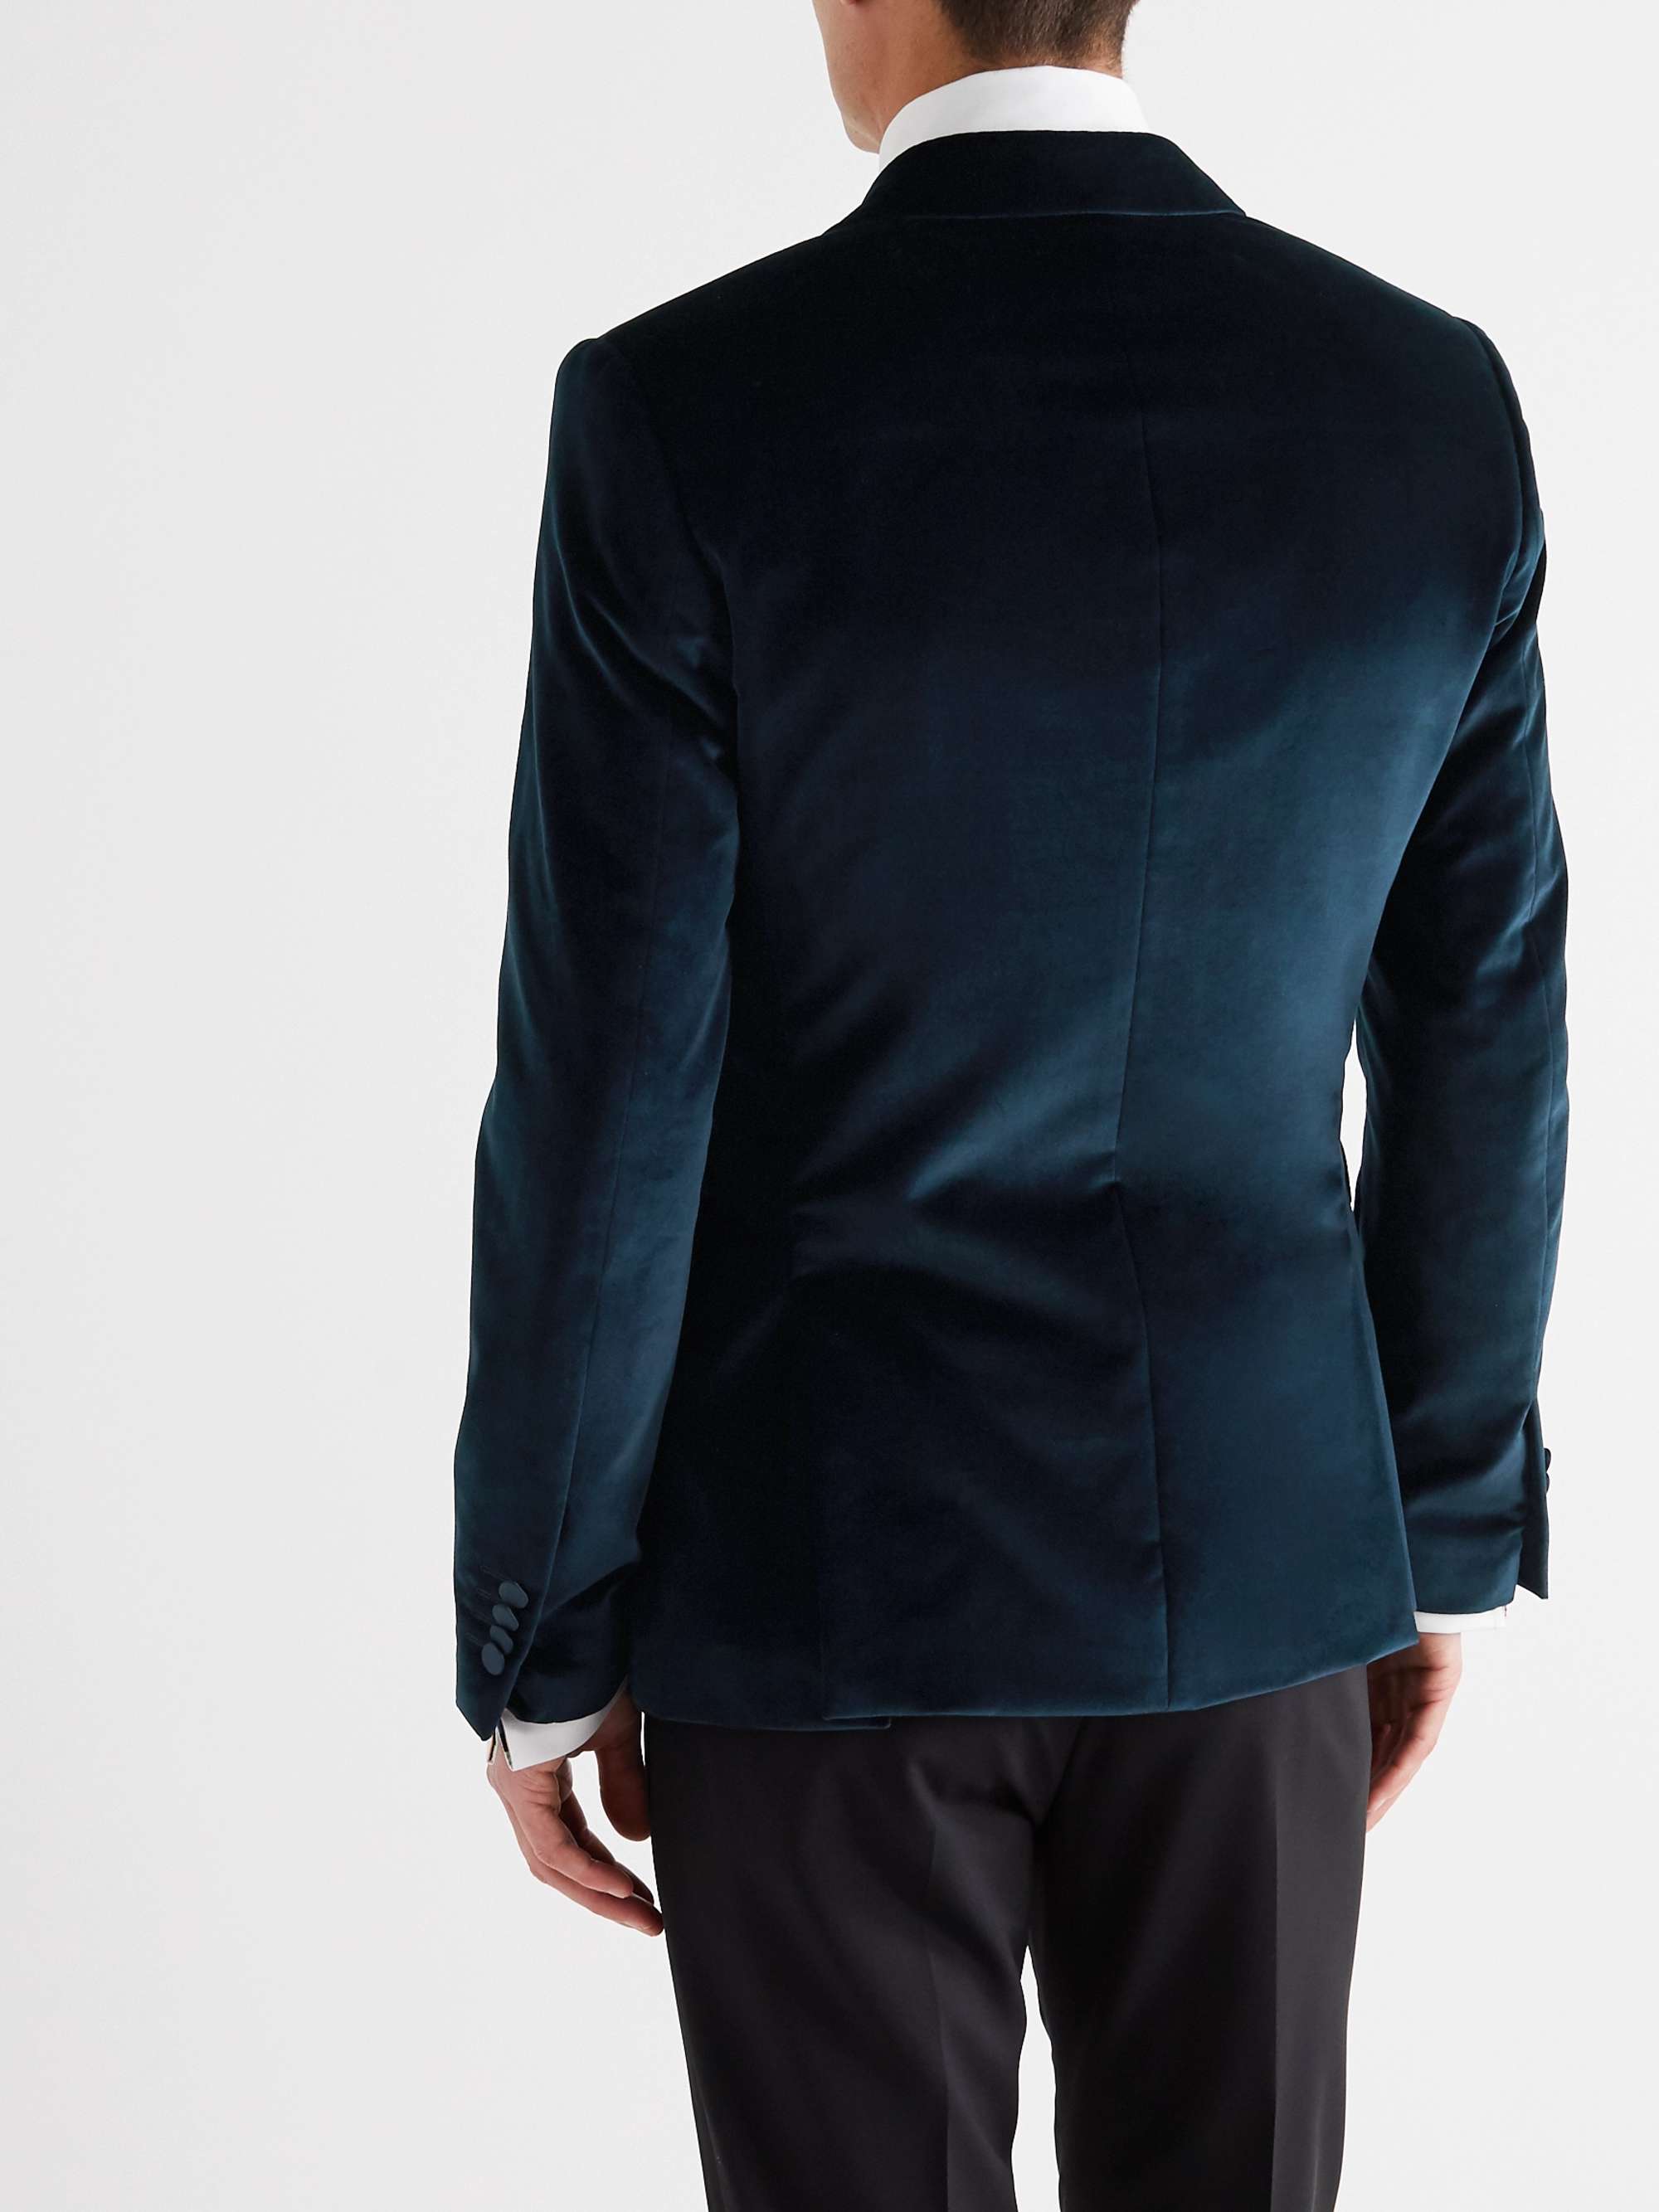 PAUL SMITH Slim-Fit Satin-Trimmed Cotton-Velvet Tuxedo Jacket for Men ...